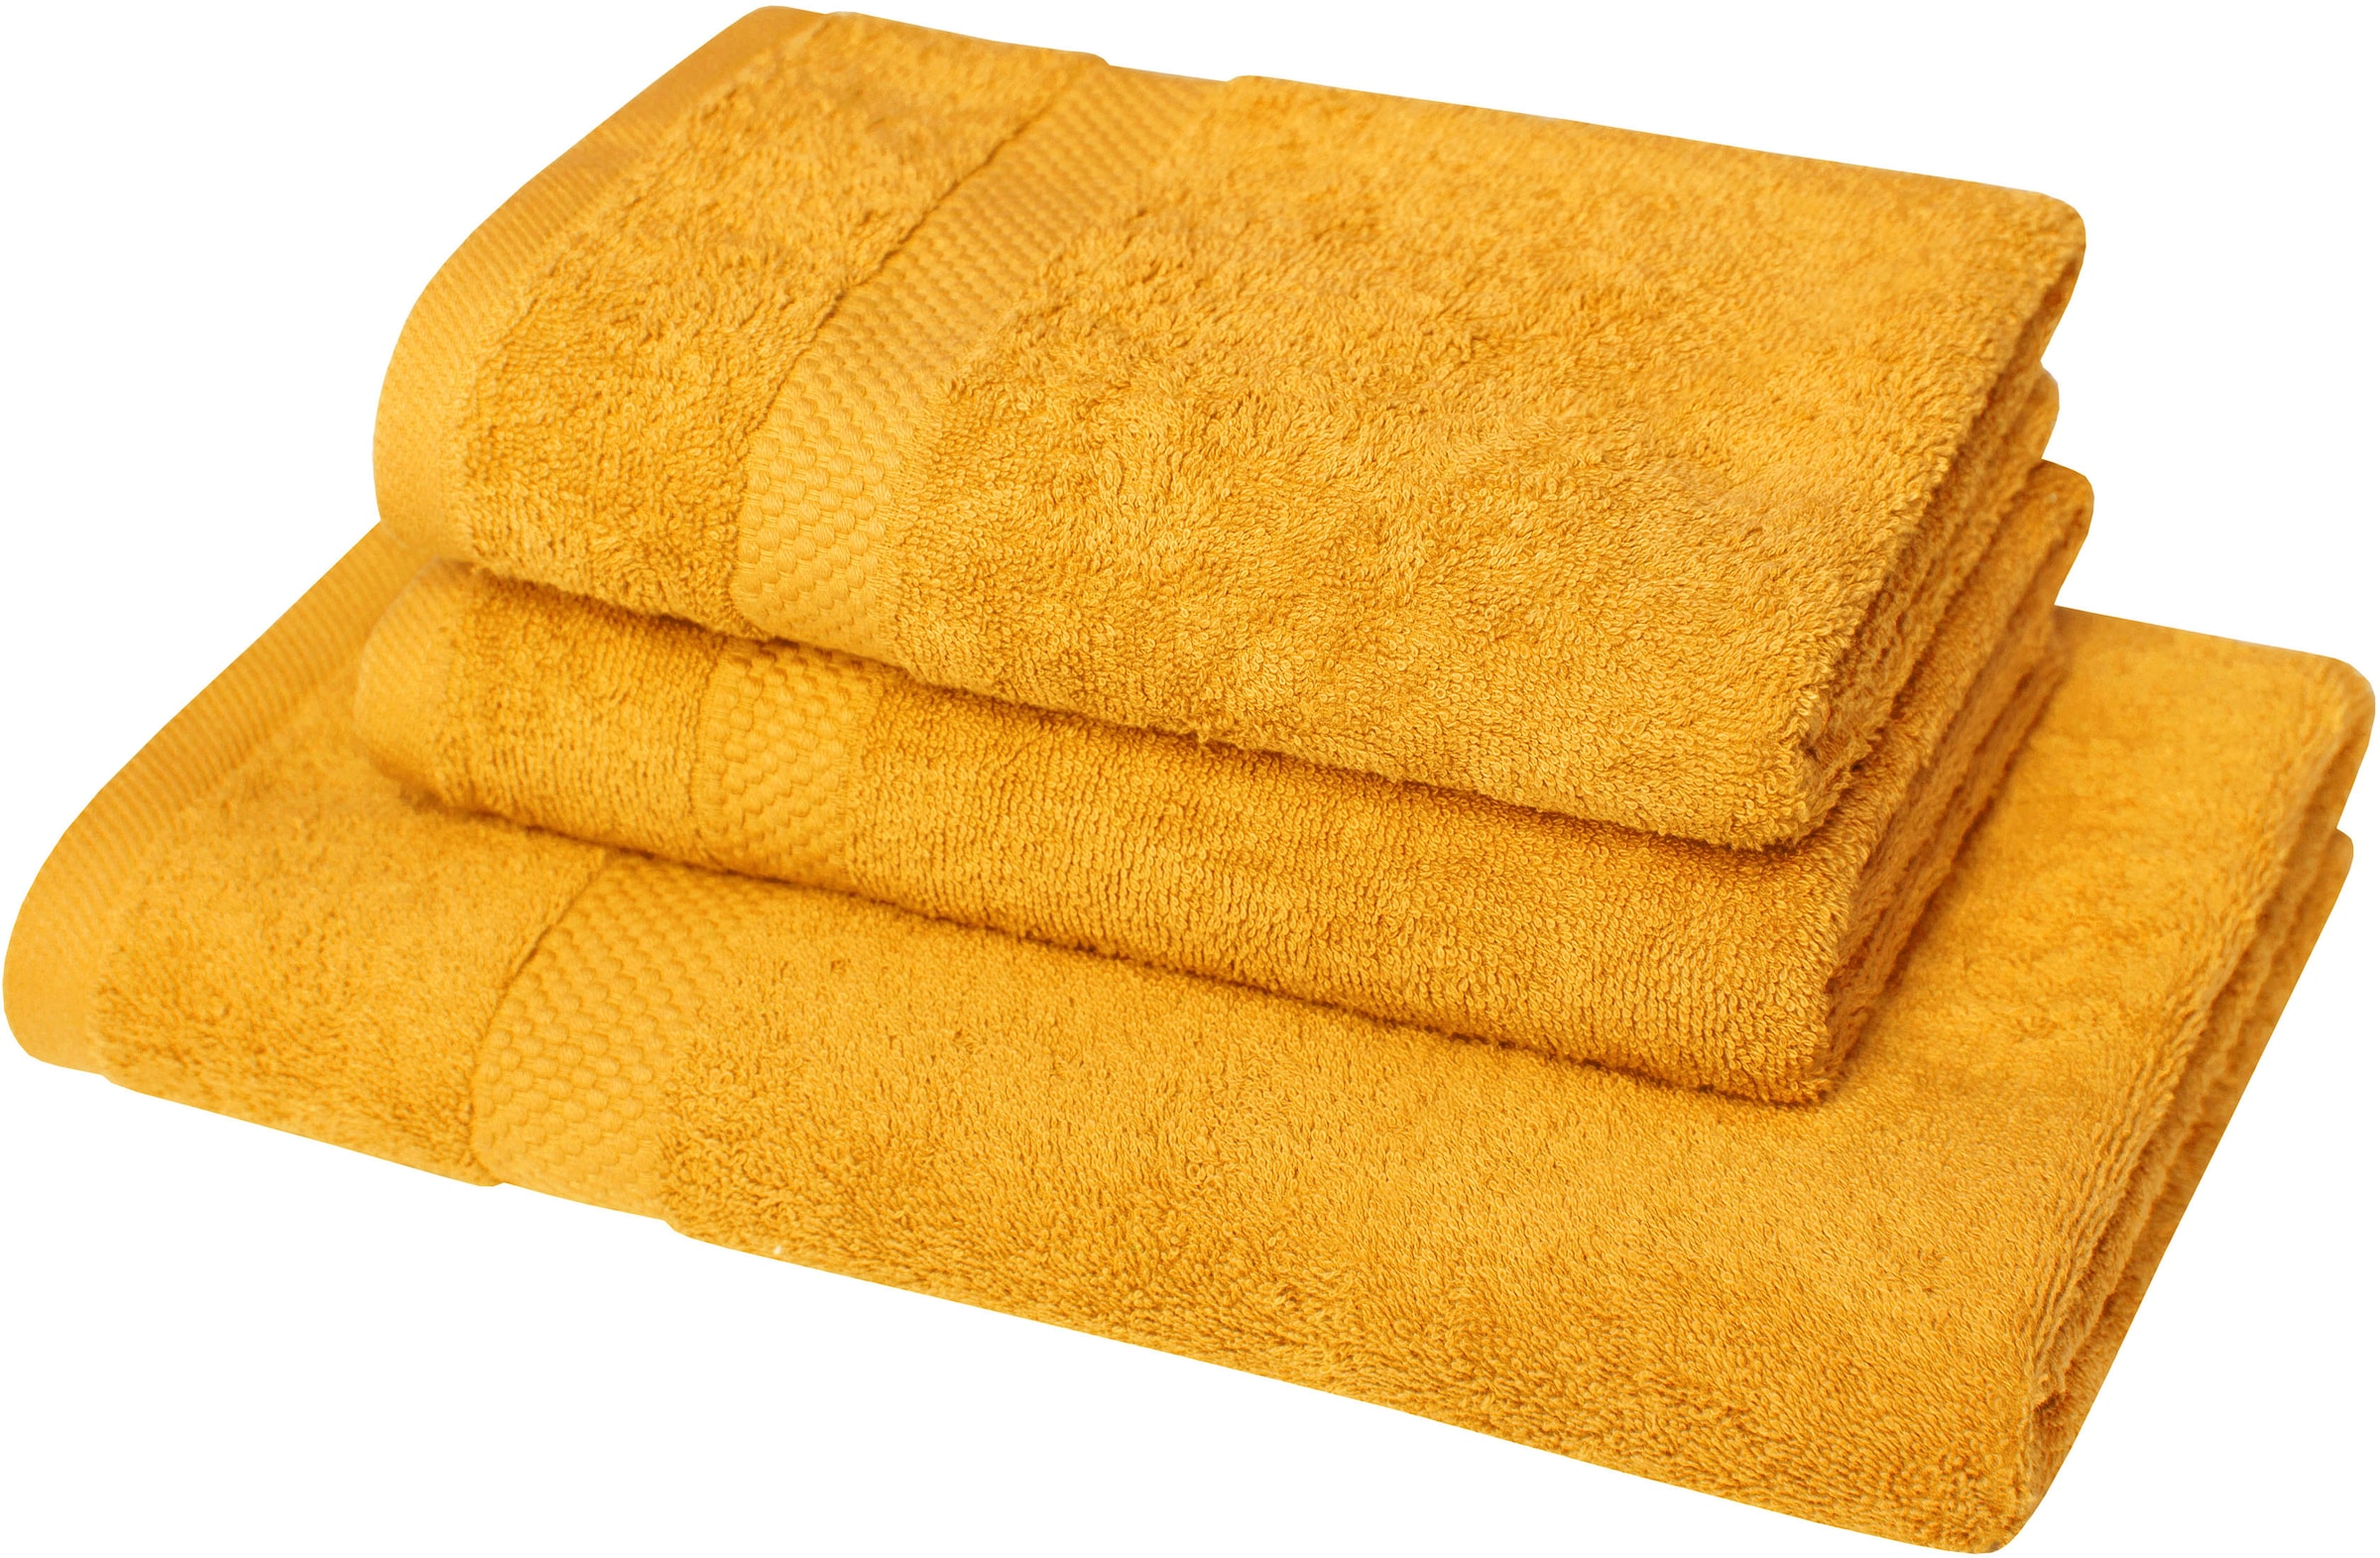 Handtuchsets aus Holz | Moebel 24 Preisvergleich